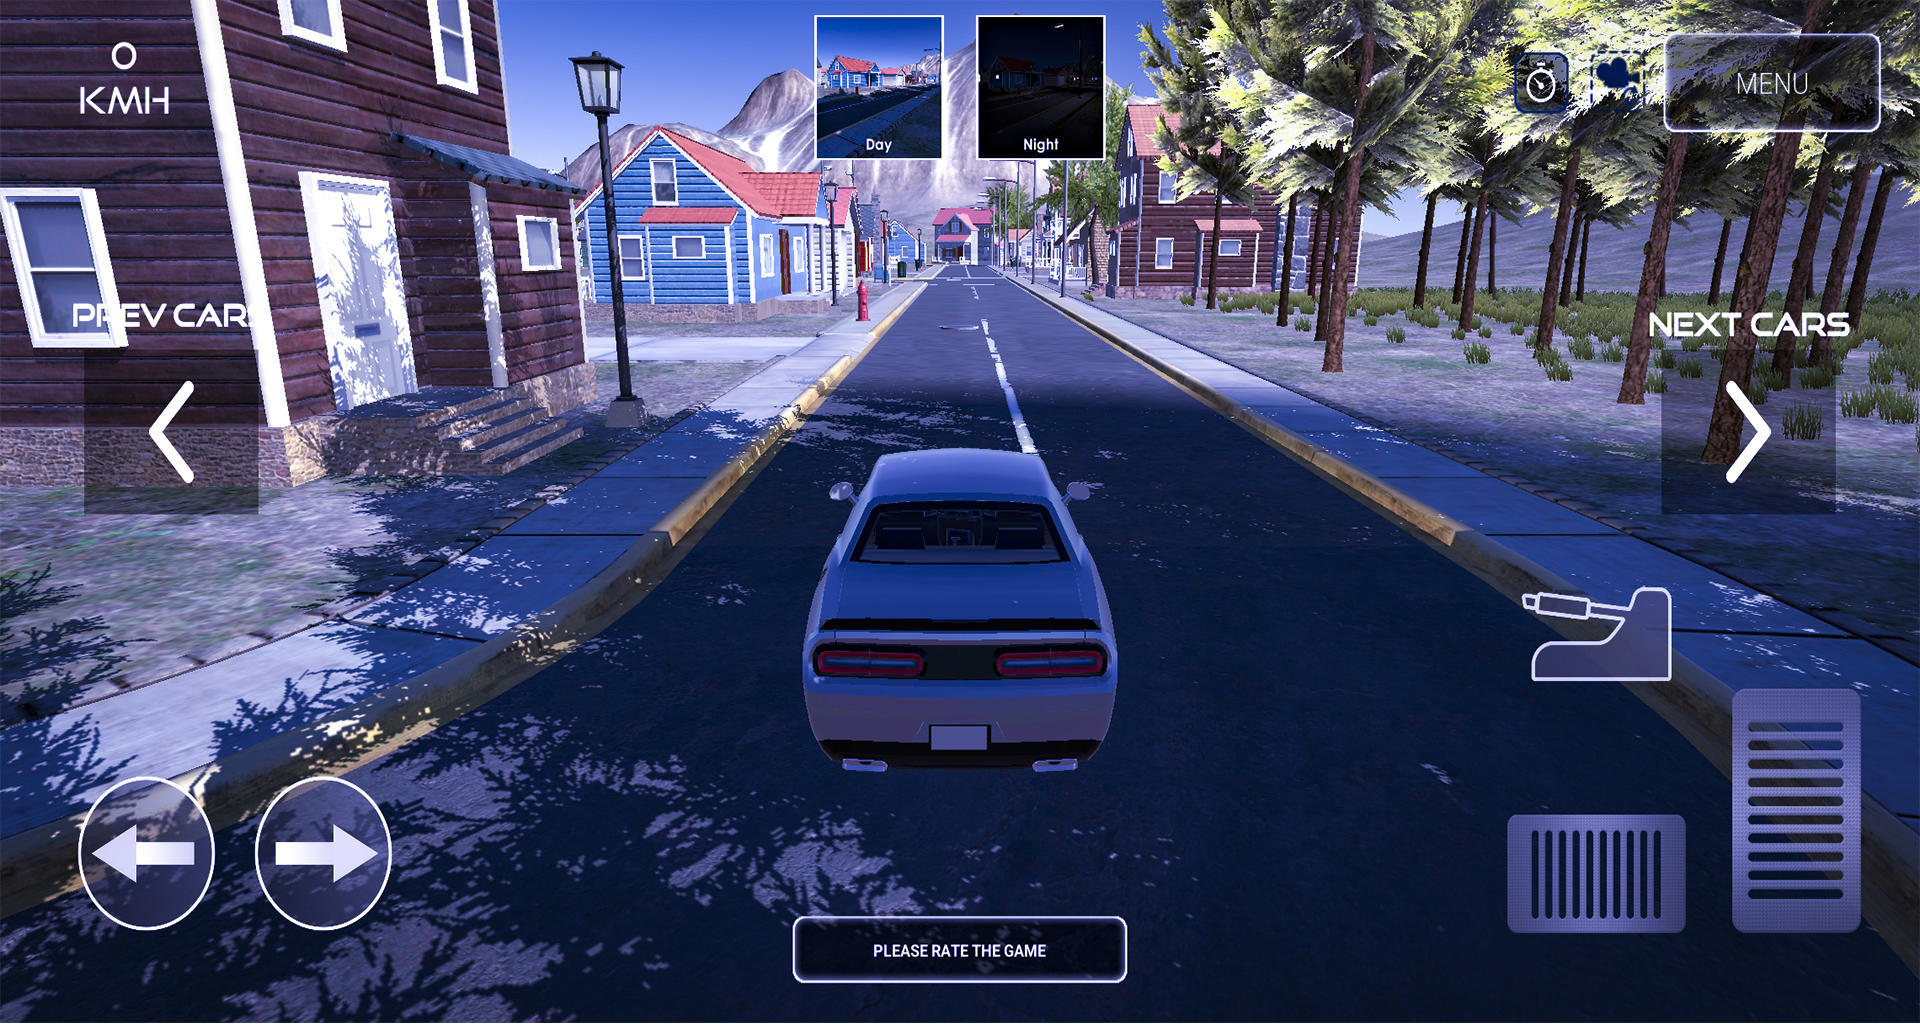 Screenshot 1 of Driver Life - Car Simulator, Parking [Demo] 0.1